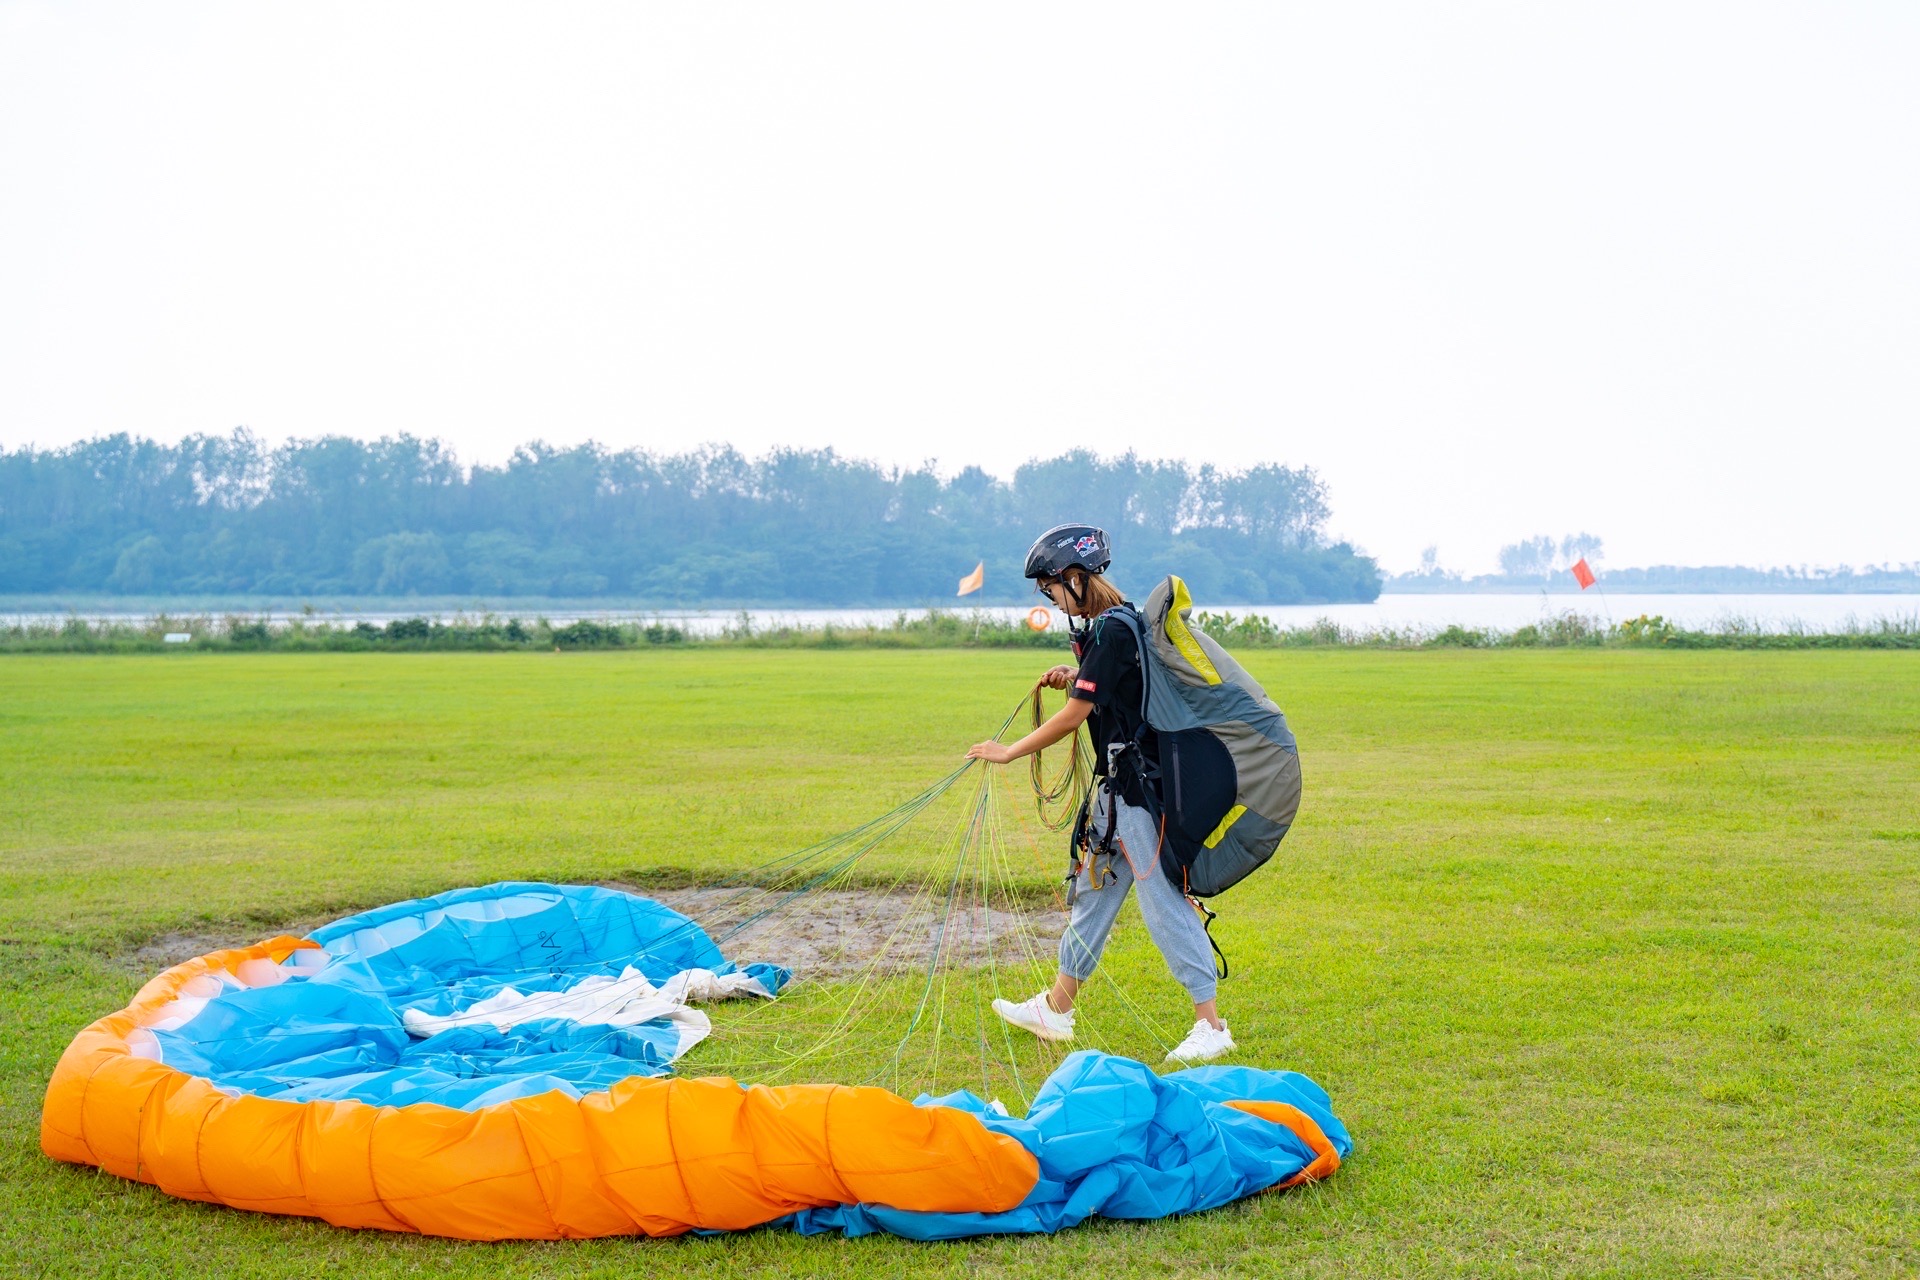 大尖山滑翔伞运动基地 ，坐落在钱塘江畔，尖山脚下，是目前江浙地带景色最优美的飞行场地。尖山四面皆平原